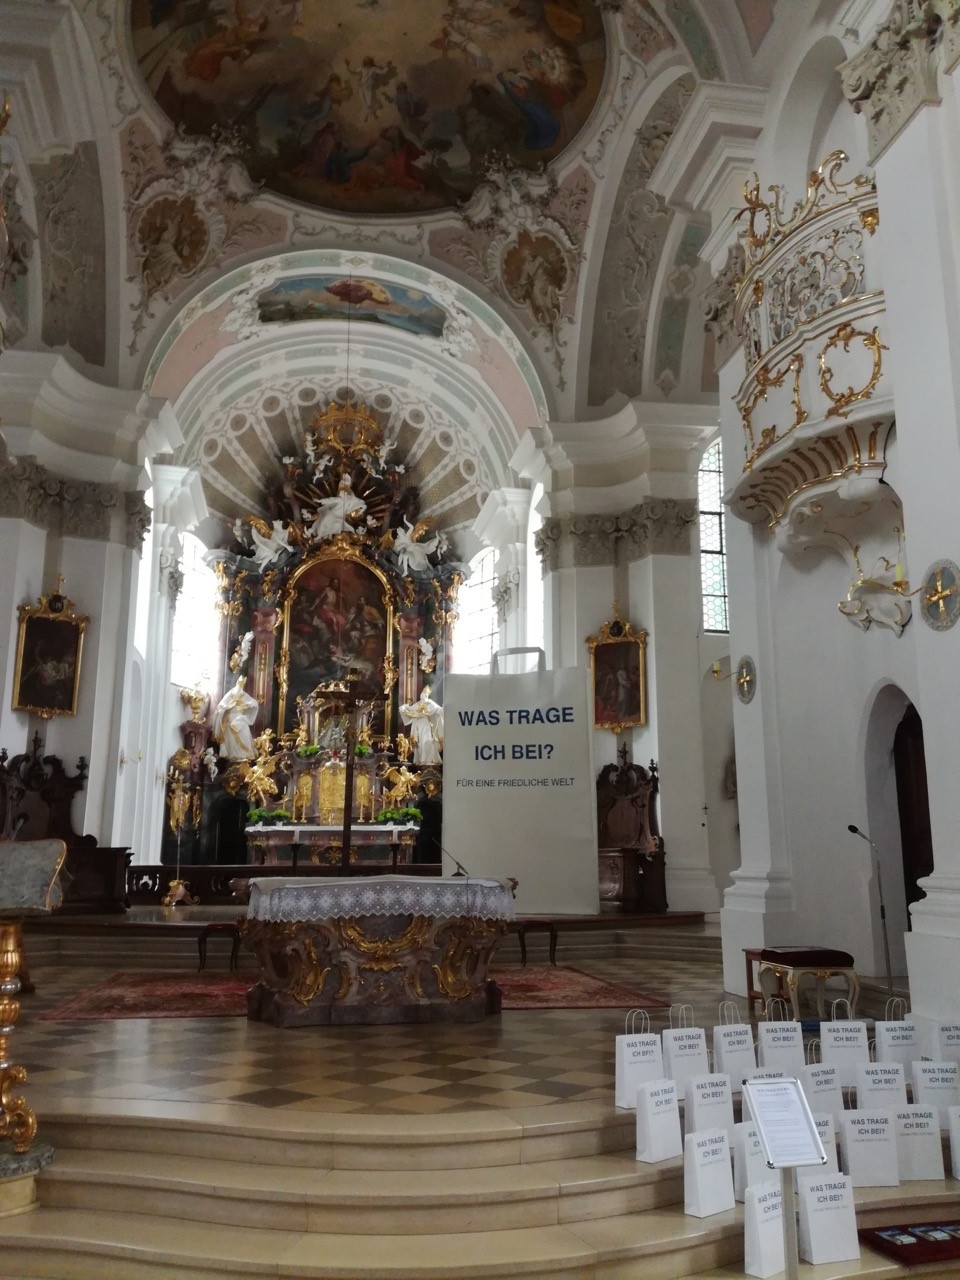 Eine 3,5m hohe Papiertüte steht gemeinsam mit kleinen aufgereihten Papiertüten in einer Kirche neben einem barocken Altar.